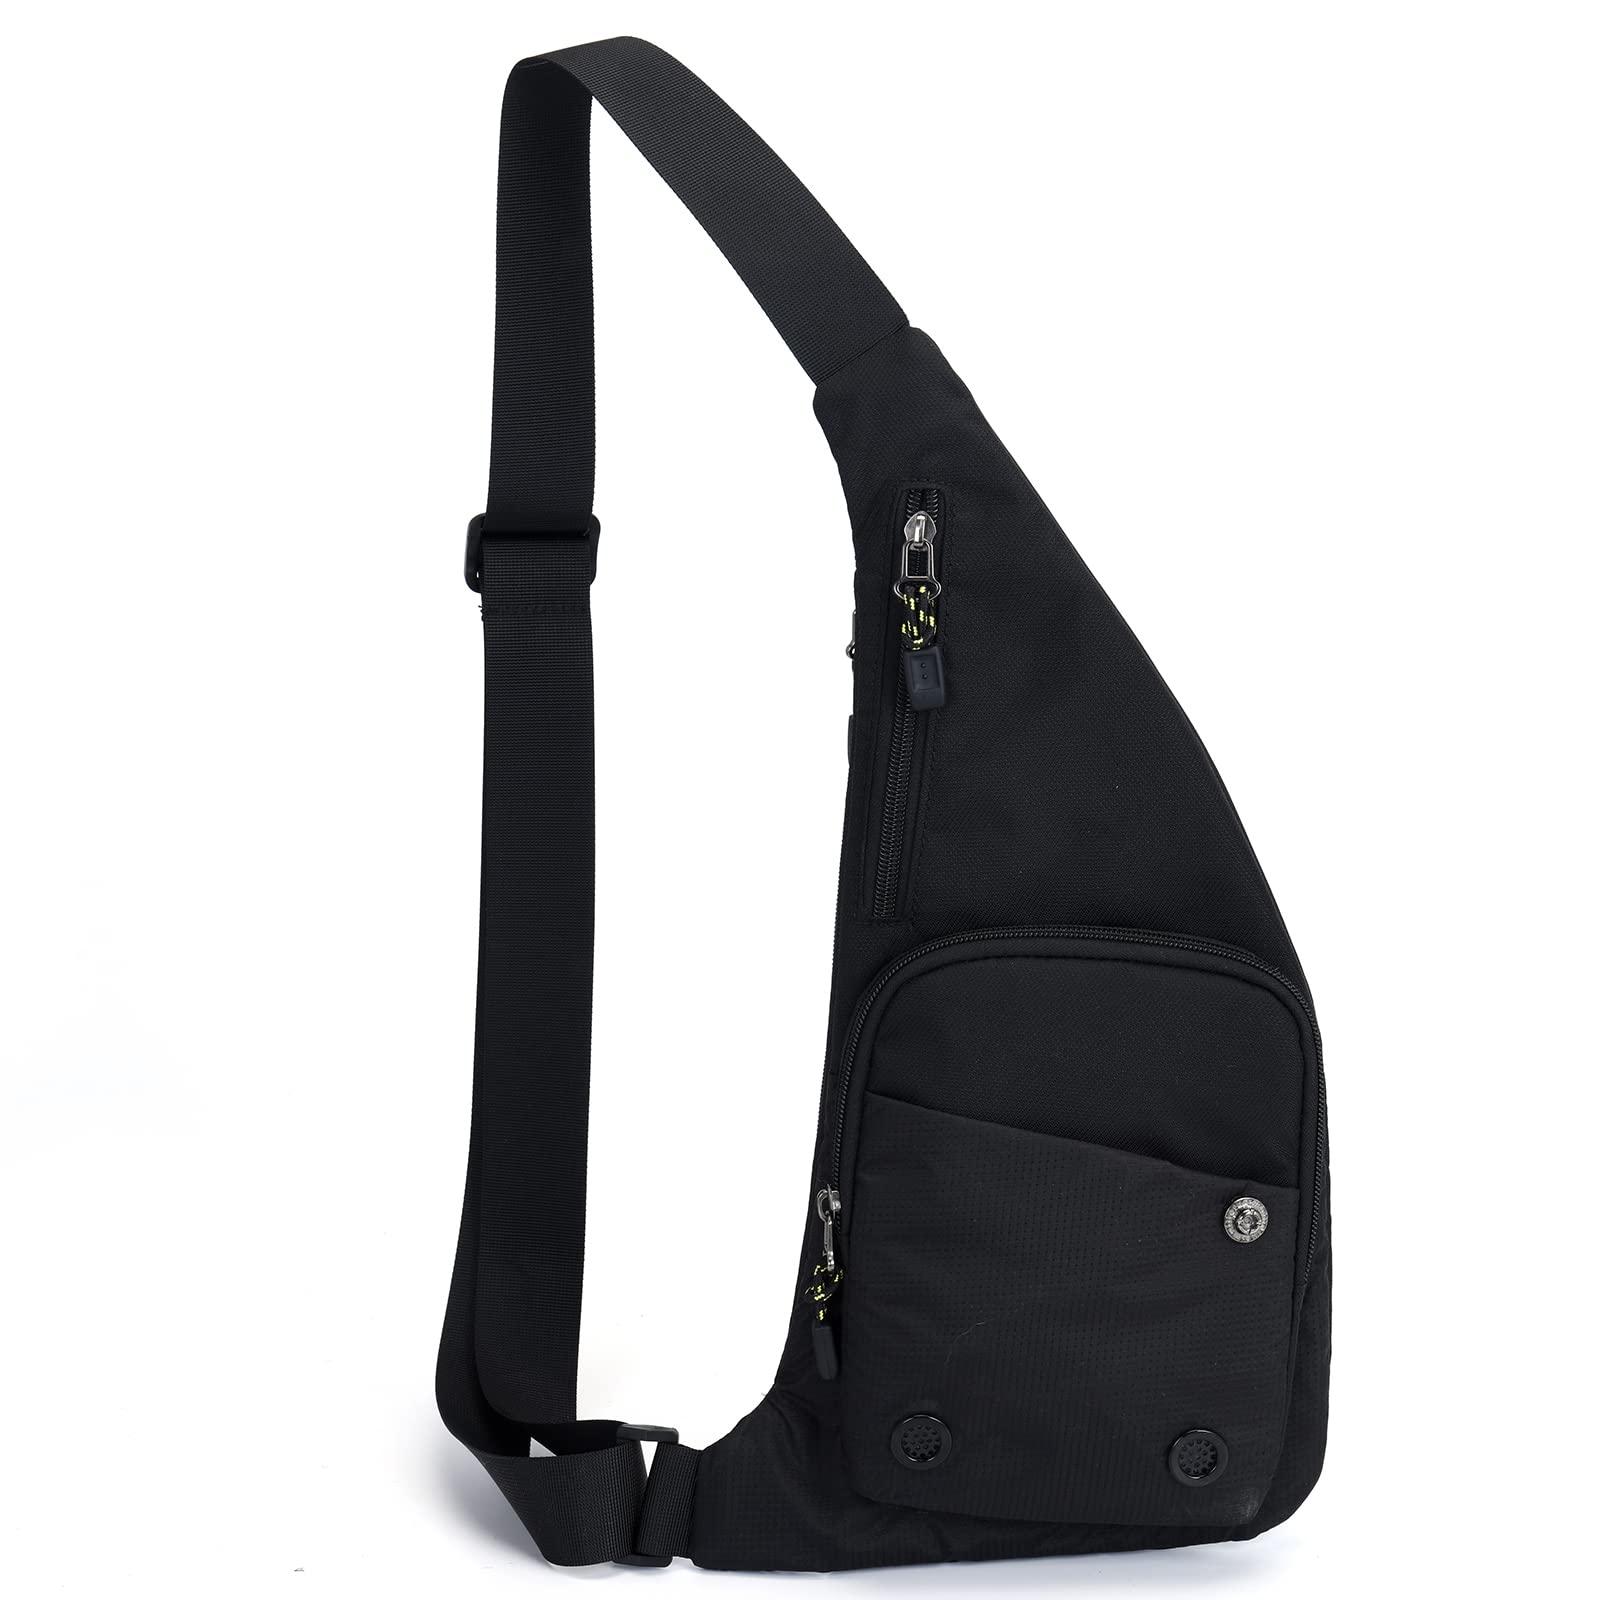 Peicees Sling Bag for Men Women Shoulder Bag Backpack Strap Pockets Chest Bag for Running Hiking Camping Exercise Outdoor